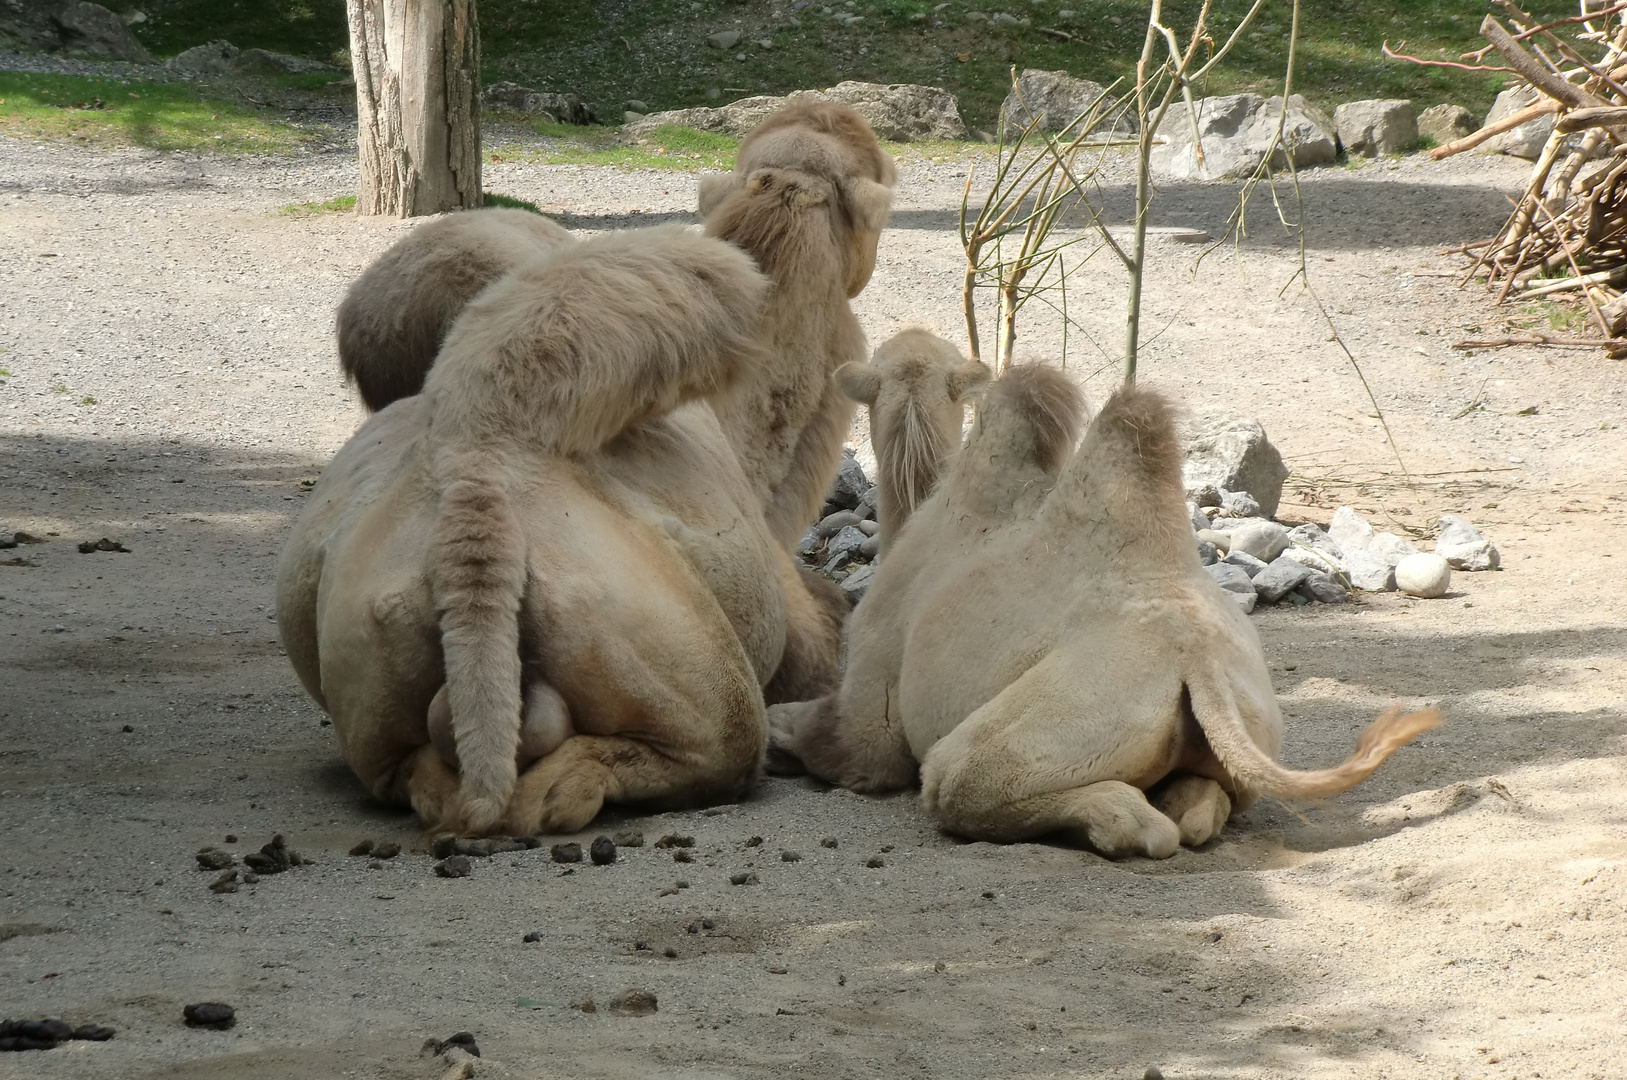 Kamelfohlen - young camel